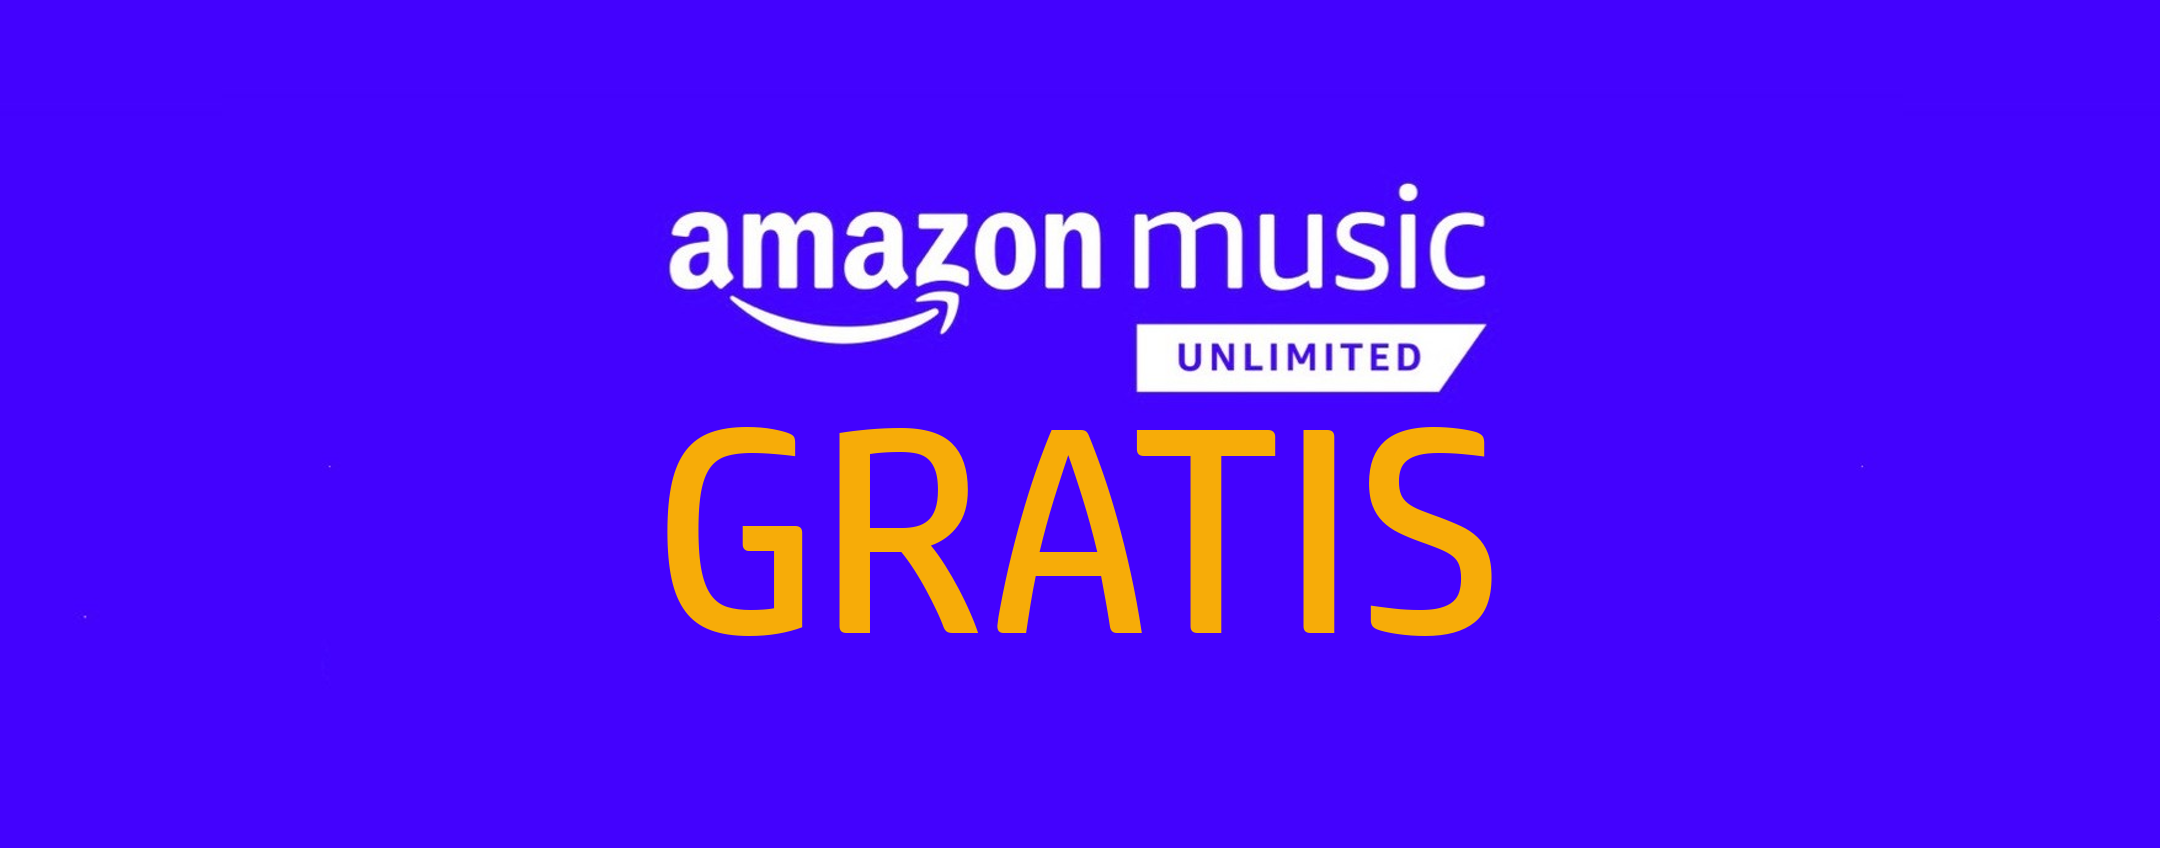 Amazon Music Unlimited gratis: ecco come fare